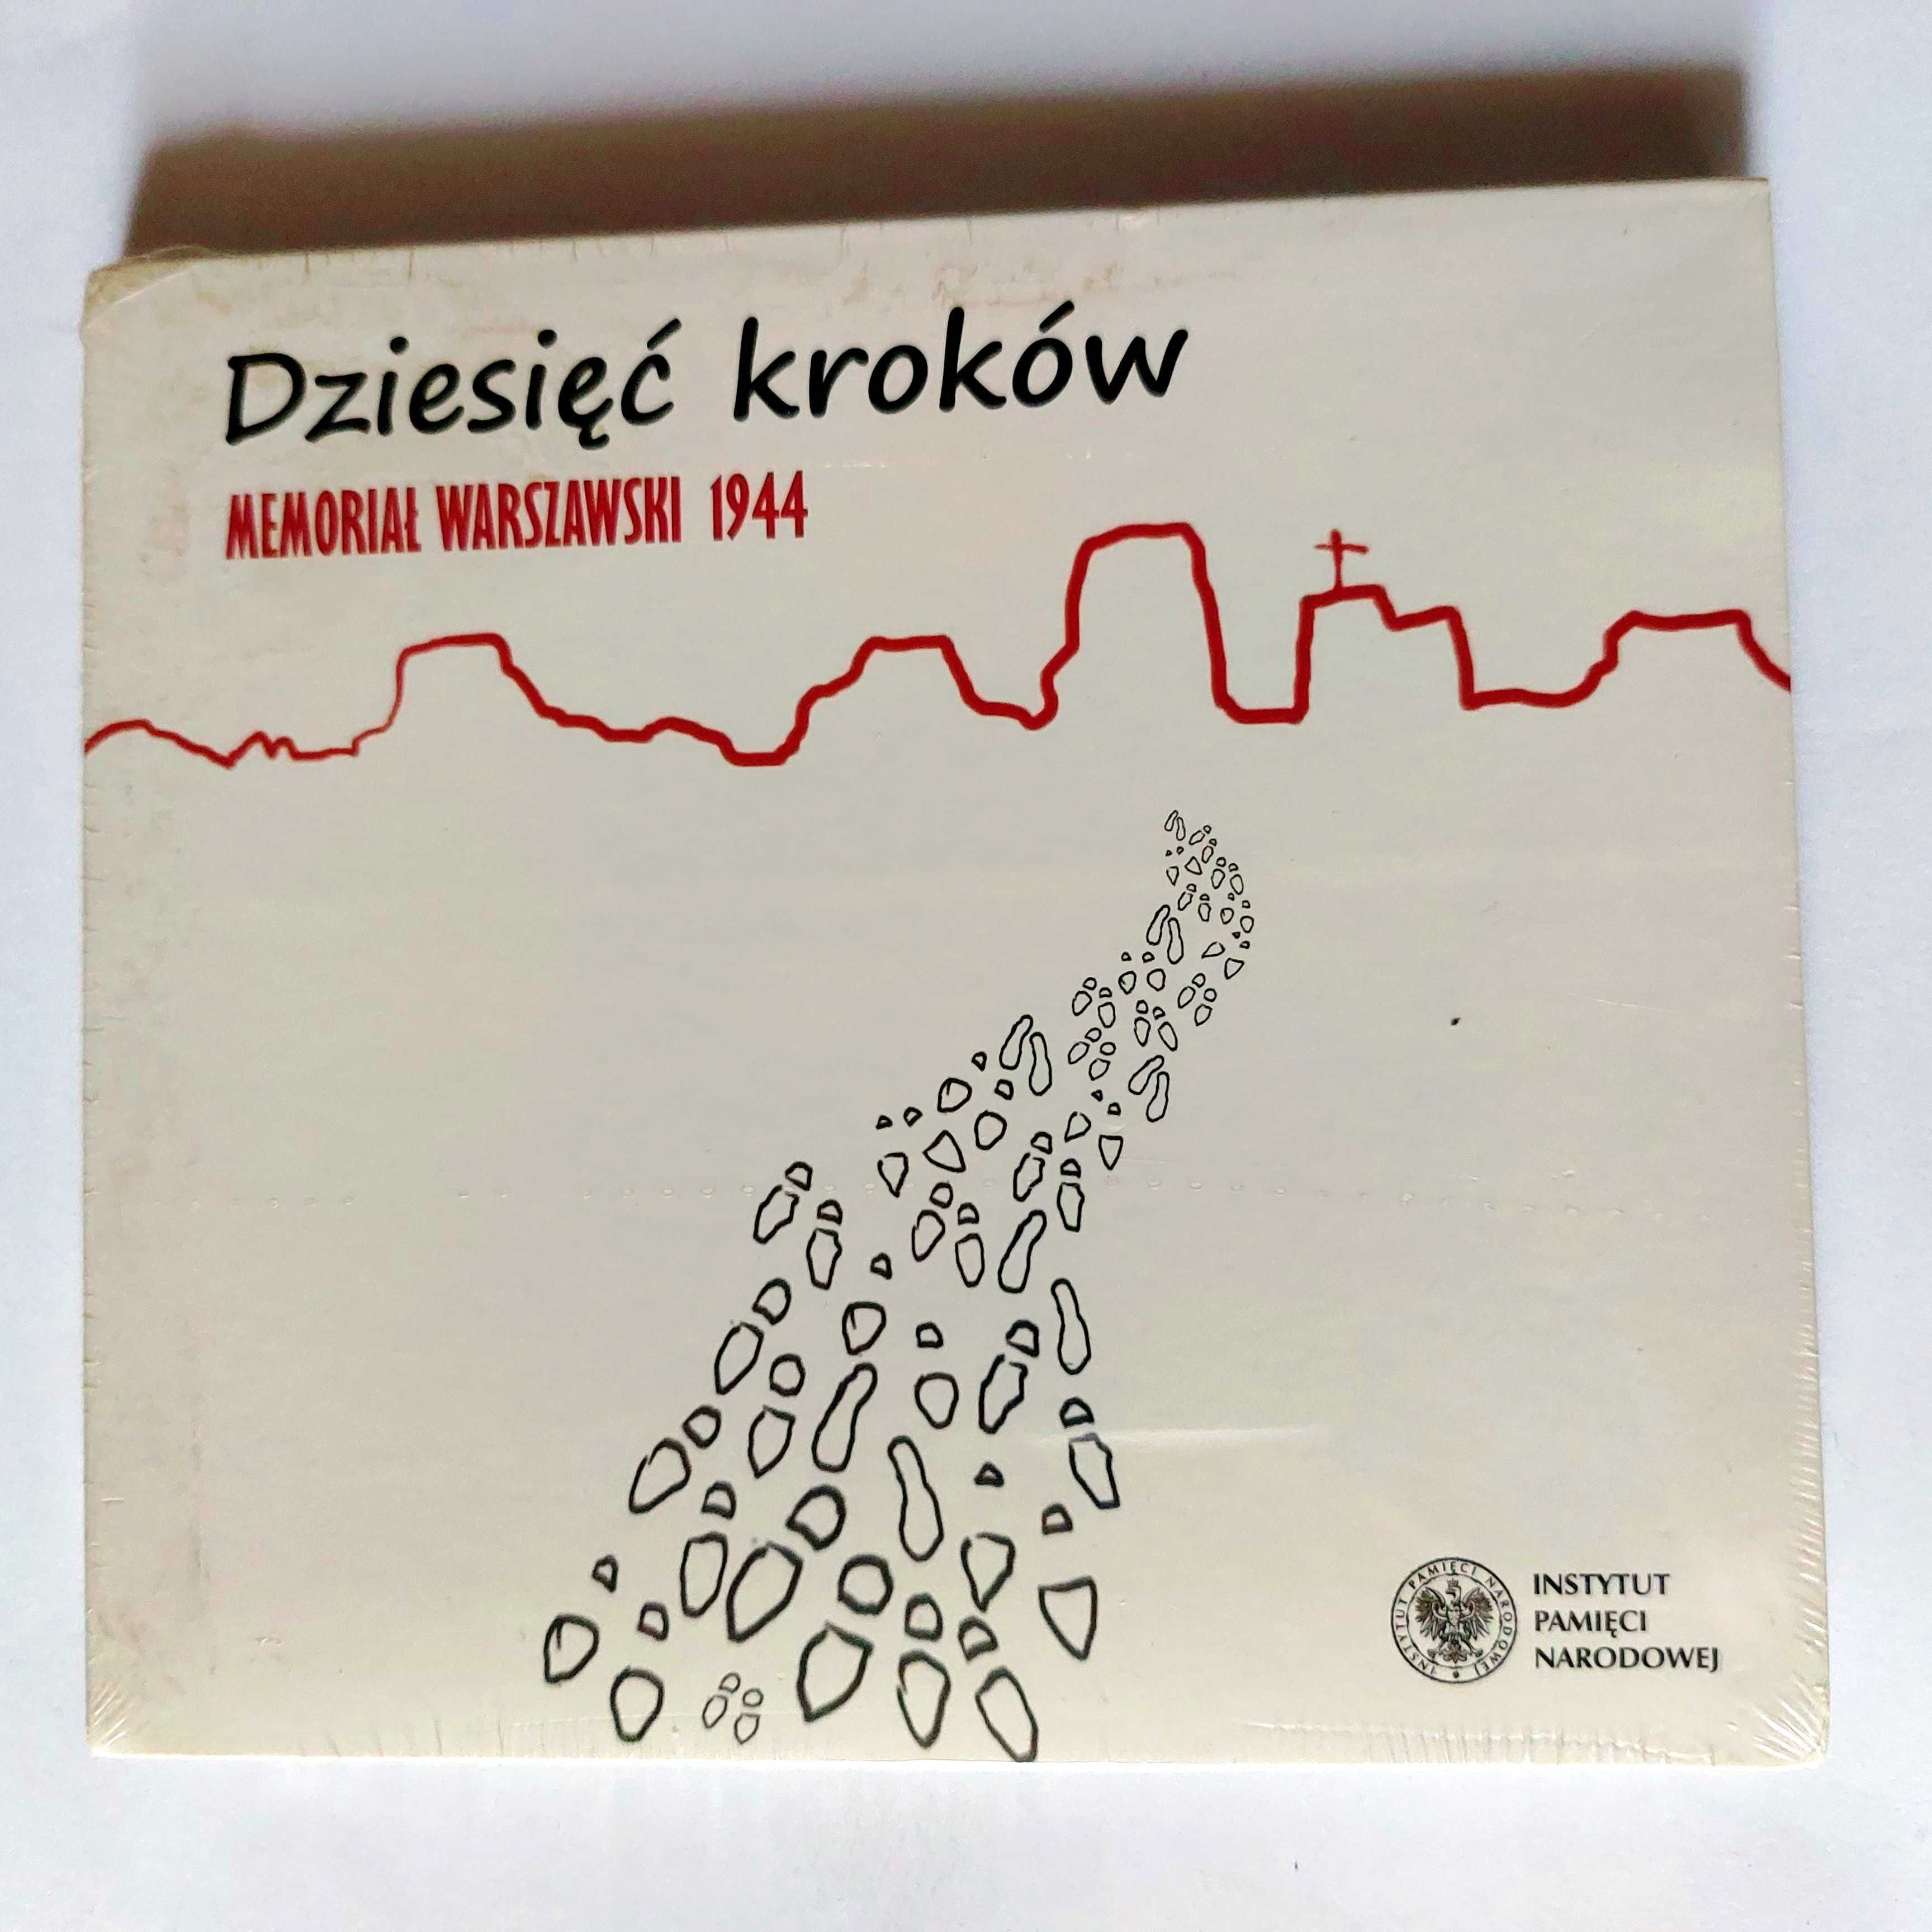 Dziesięć kroków - Memoriał Warszawski 1944 | CD